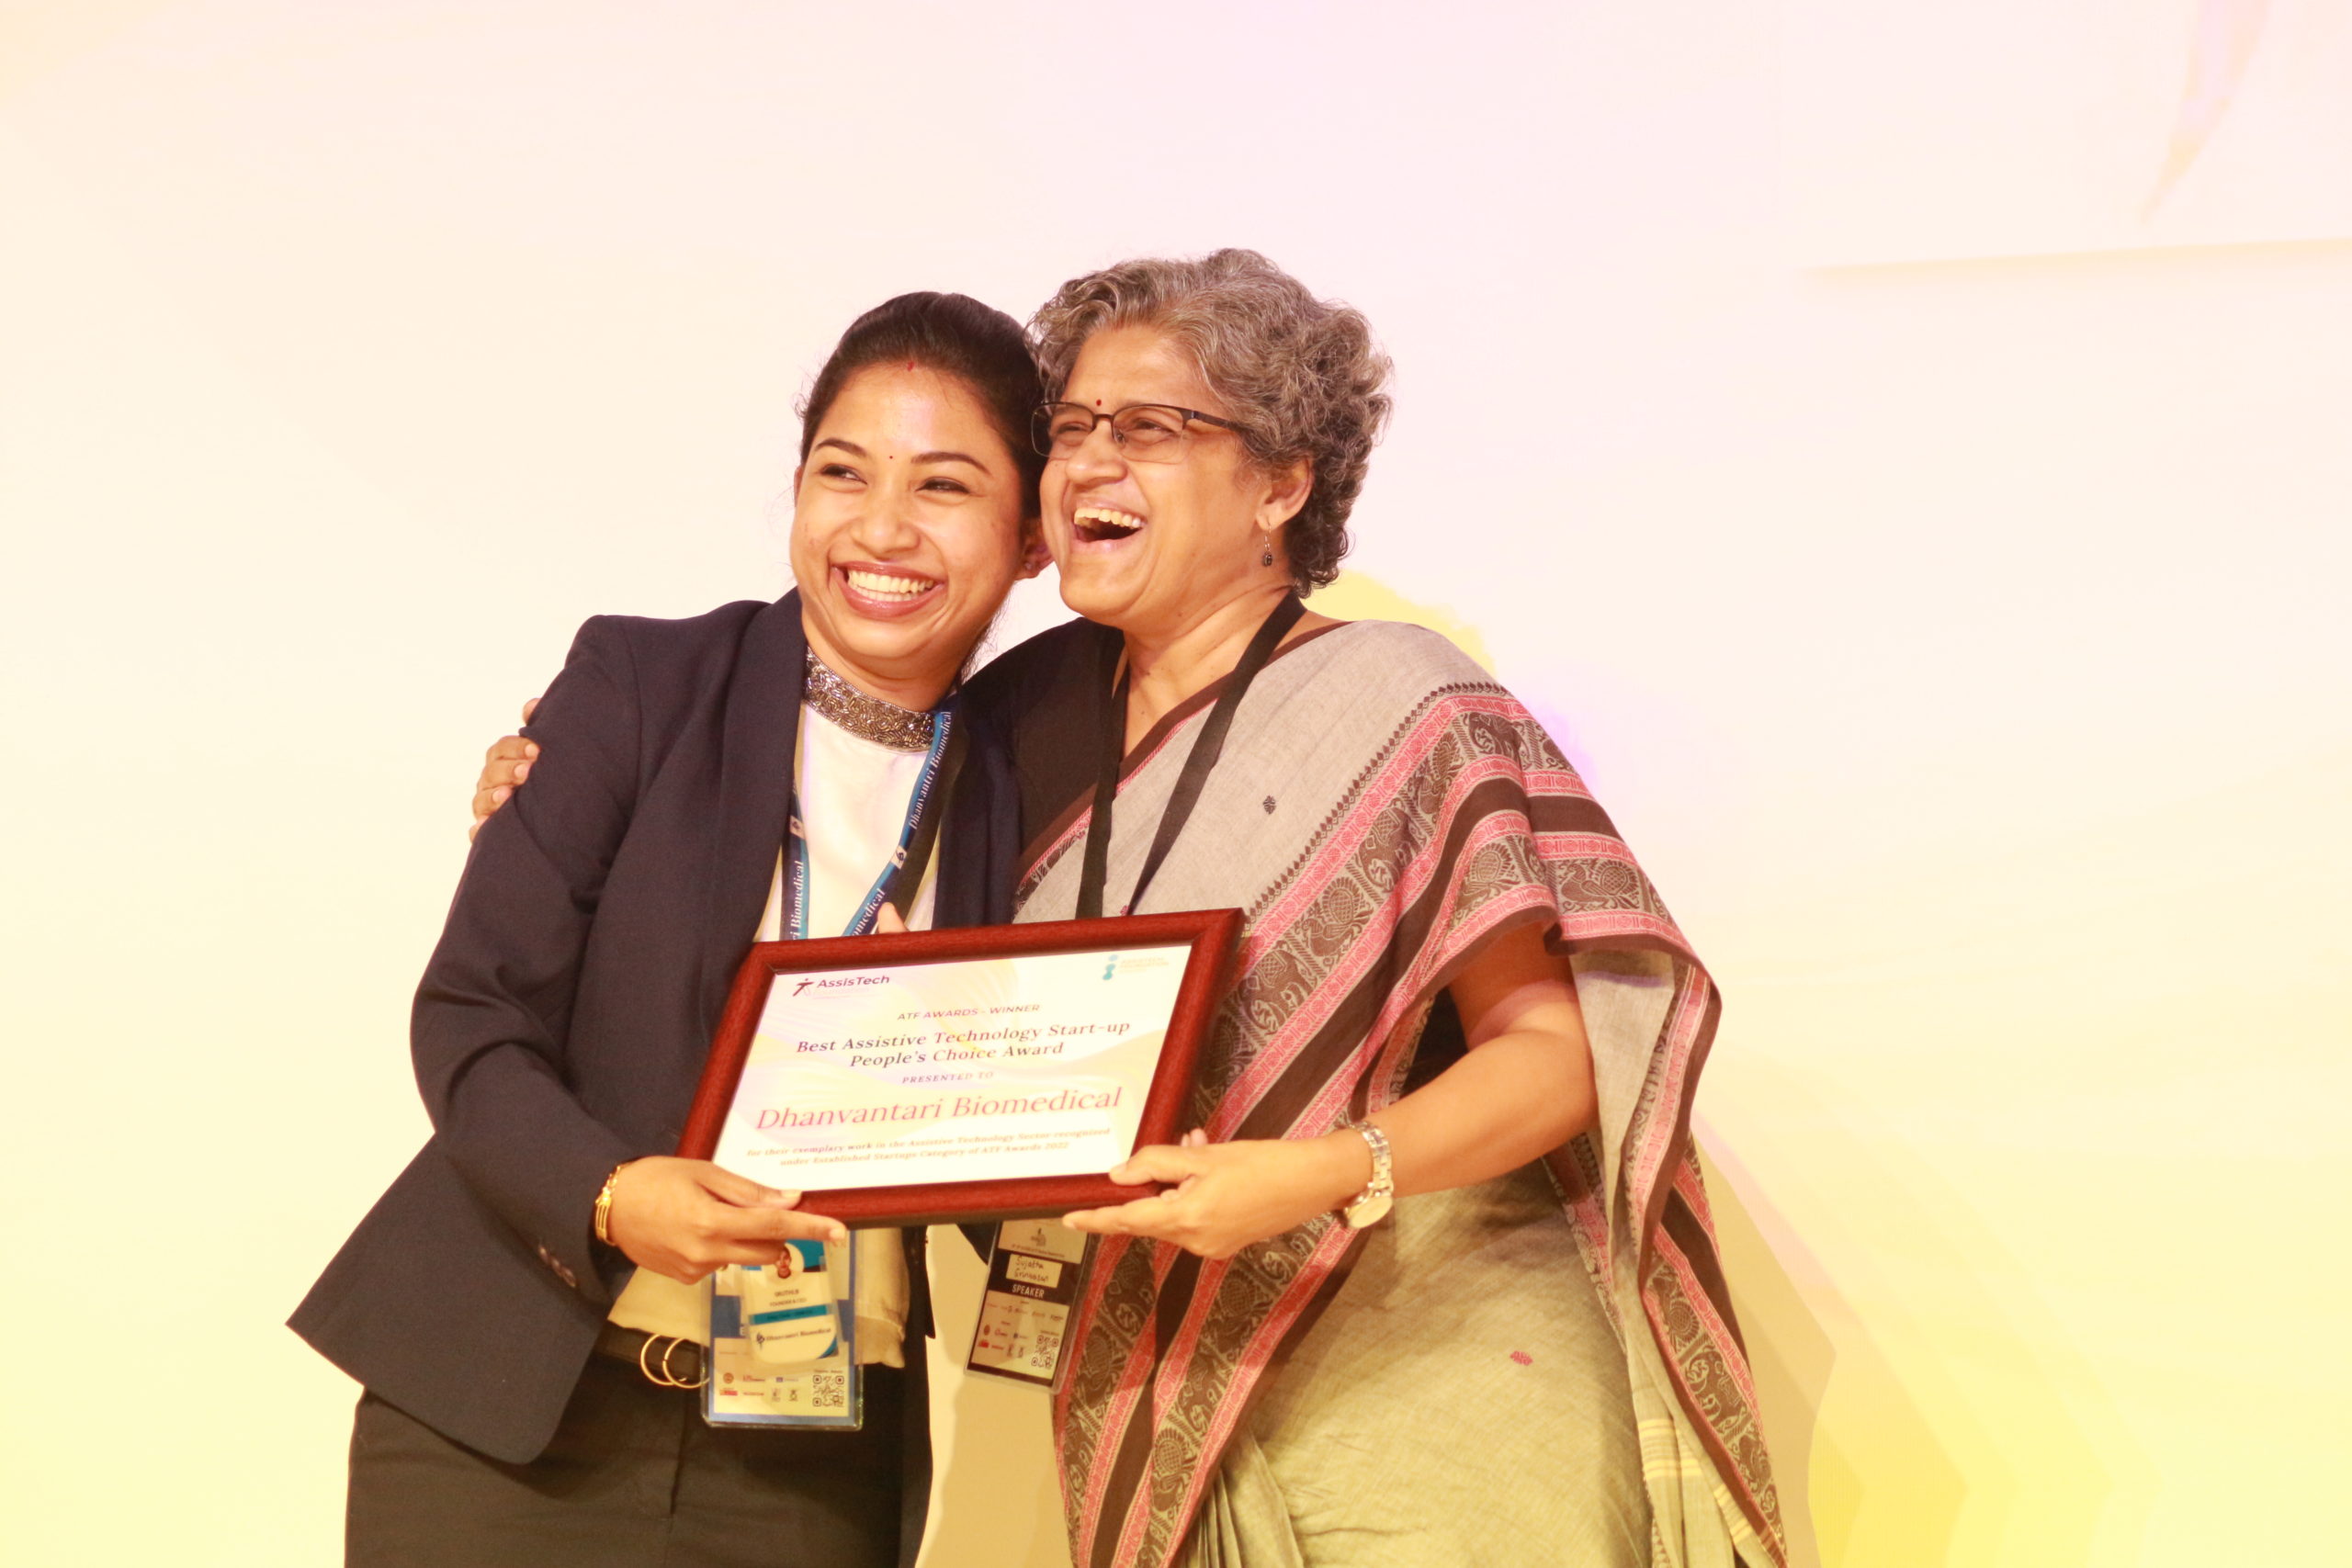 Sujatha Srinivasan presenting an award